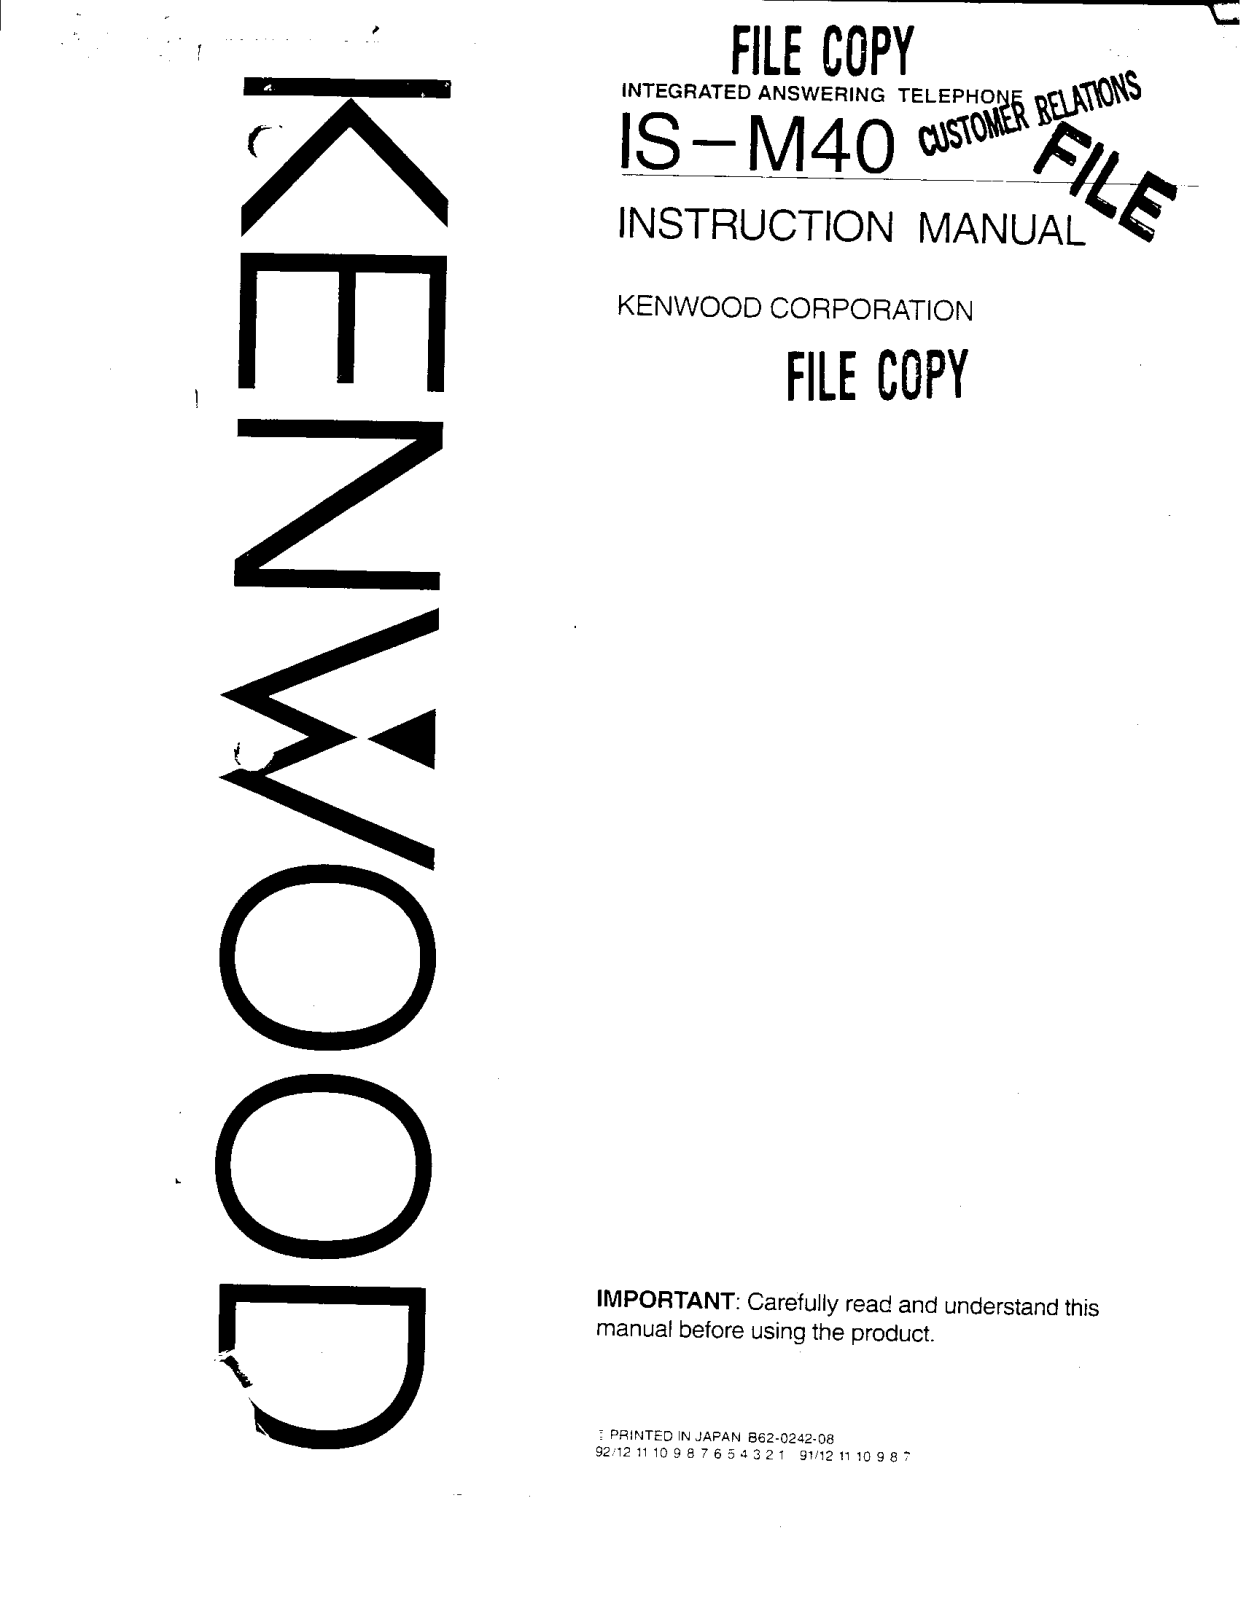 Kenwood IS-M40 Owner's Manual